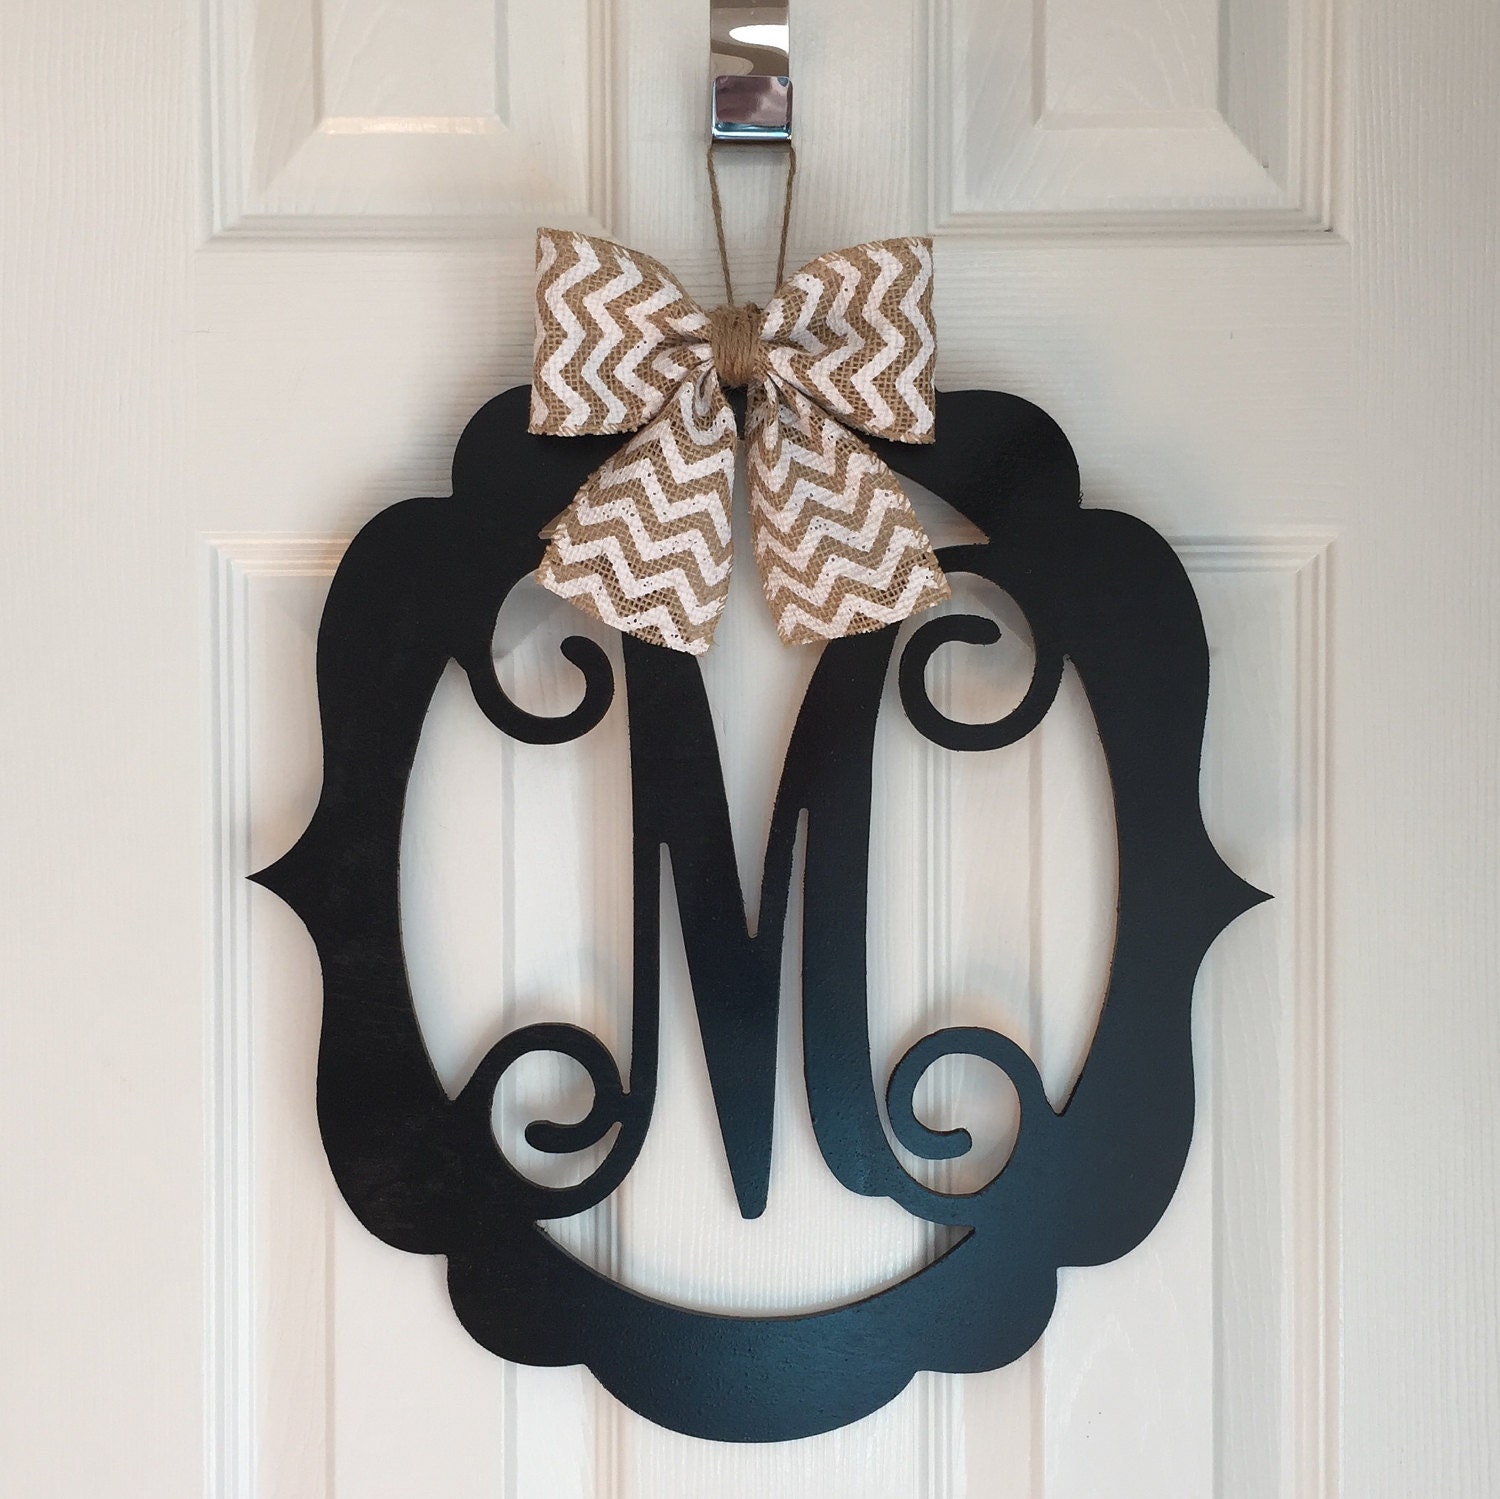 Monogram Door Hanger - Spring Door Hangers - Wood Scoll Door Hanger - Spring Door Decoration - Black Wood Monogram Hanger - Black Door Decor